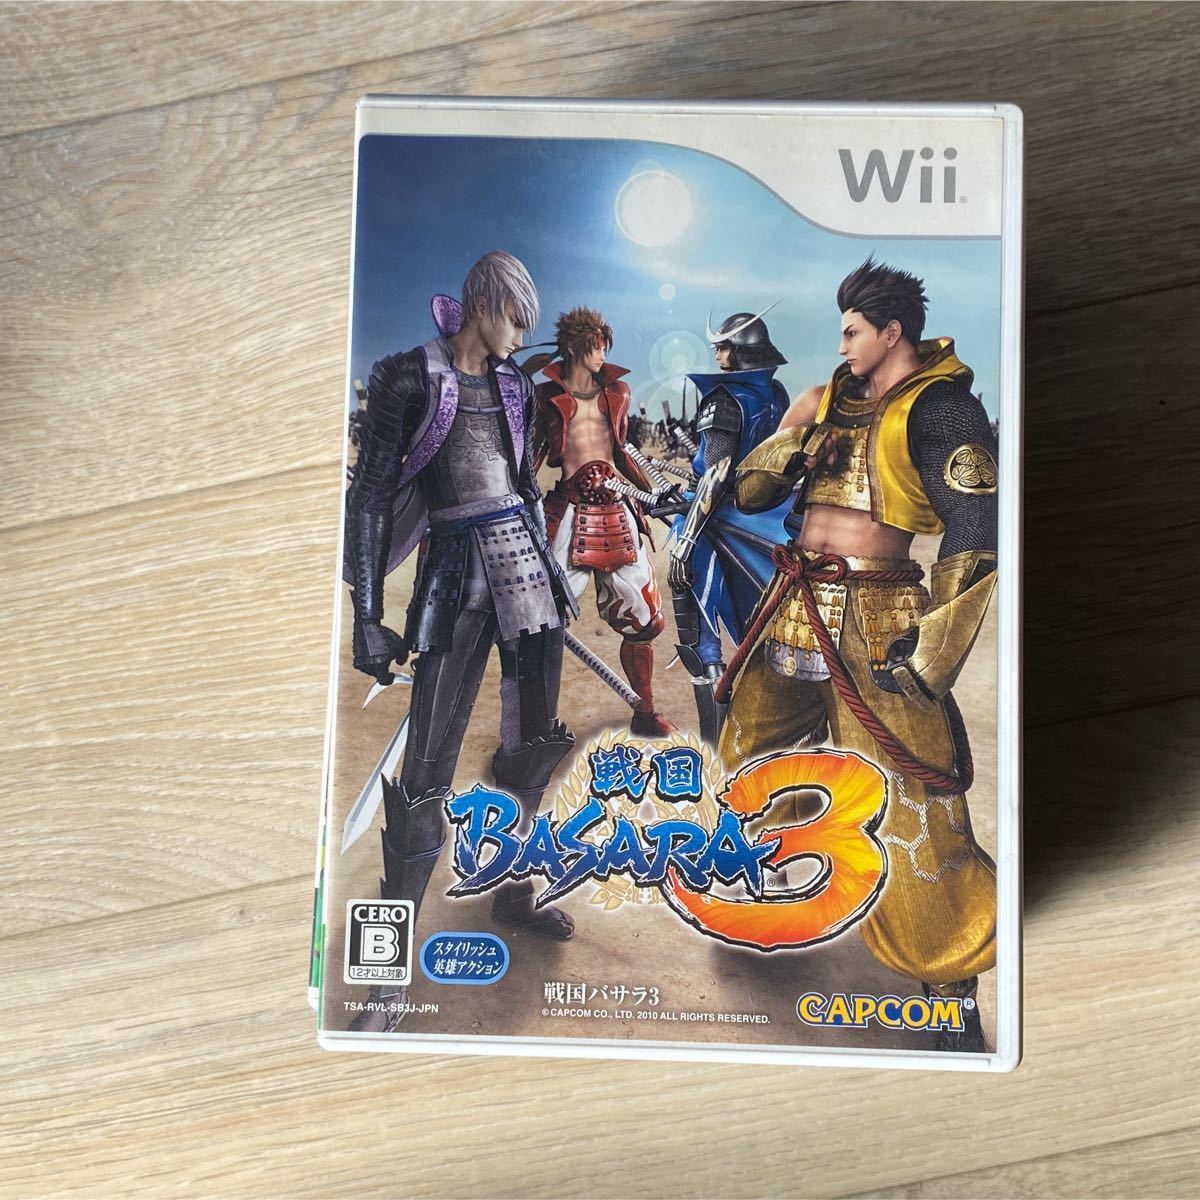 Wiiソフト Wii 戦国BASARA3 ゼルダの伝説スカイウォードソード 戦国バサラ3